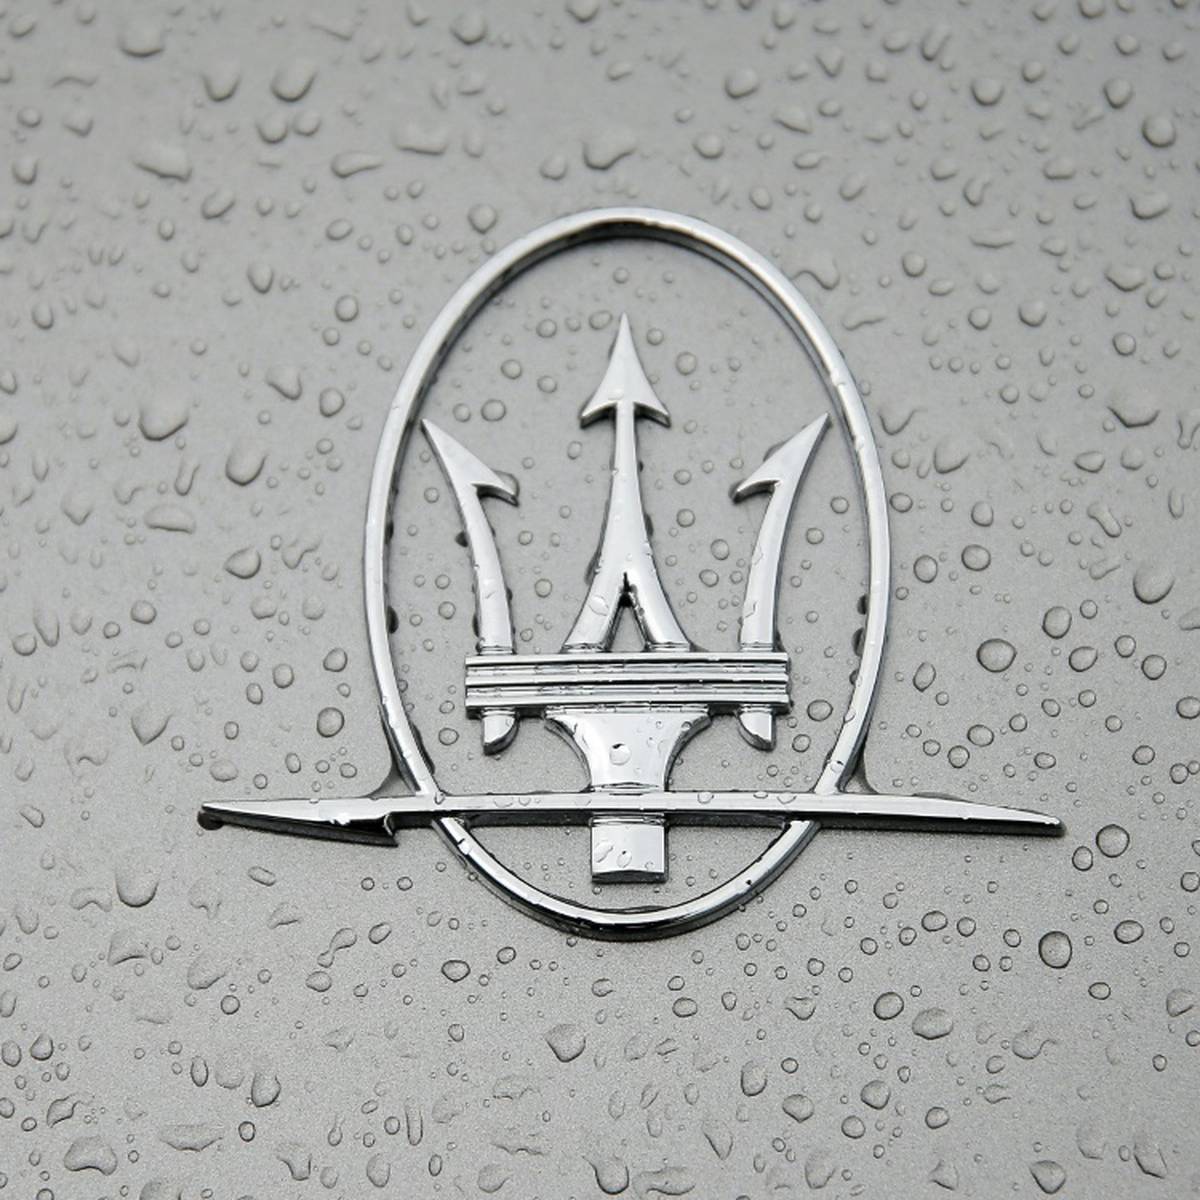 Die italienische Edelmarke Maserati steigt im kommenden Jahr in die Formel E ein. Das gab das Unternehmen am Dienstag bekannt.